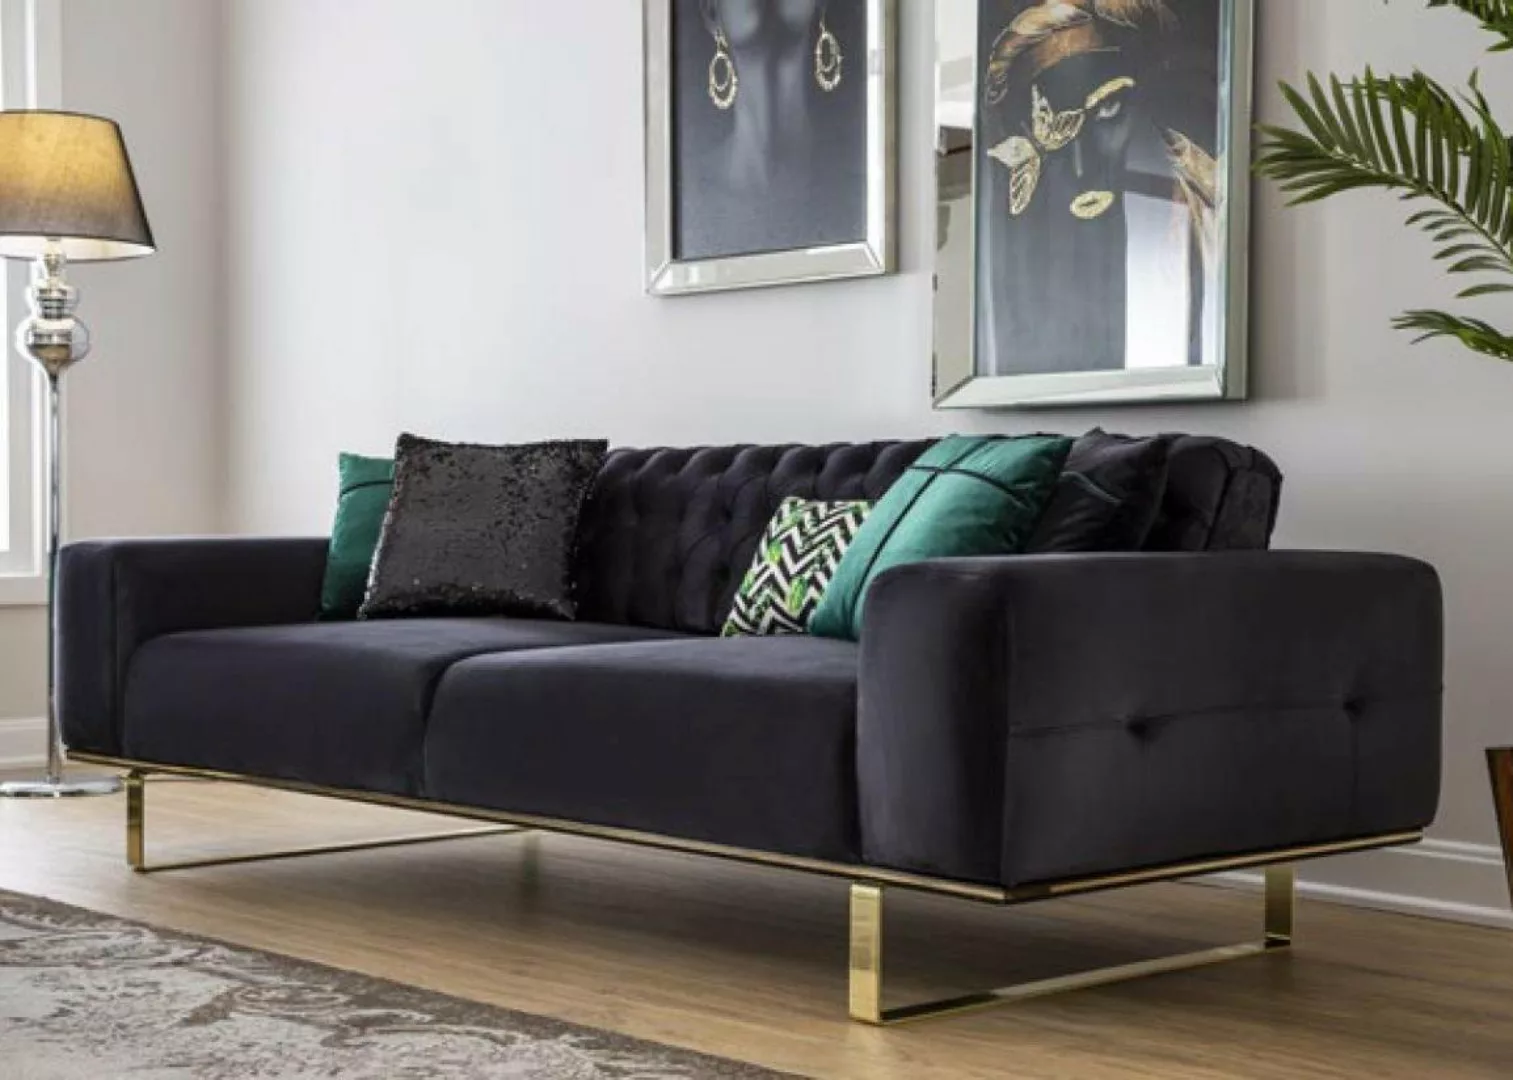 JVmoebel 4-Sitzer Moderne Sofa 4 Sitz Design Wohnzimmer Polster Holz Polste günstig online kaufen